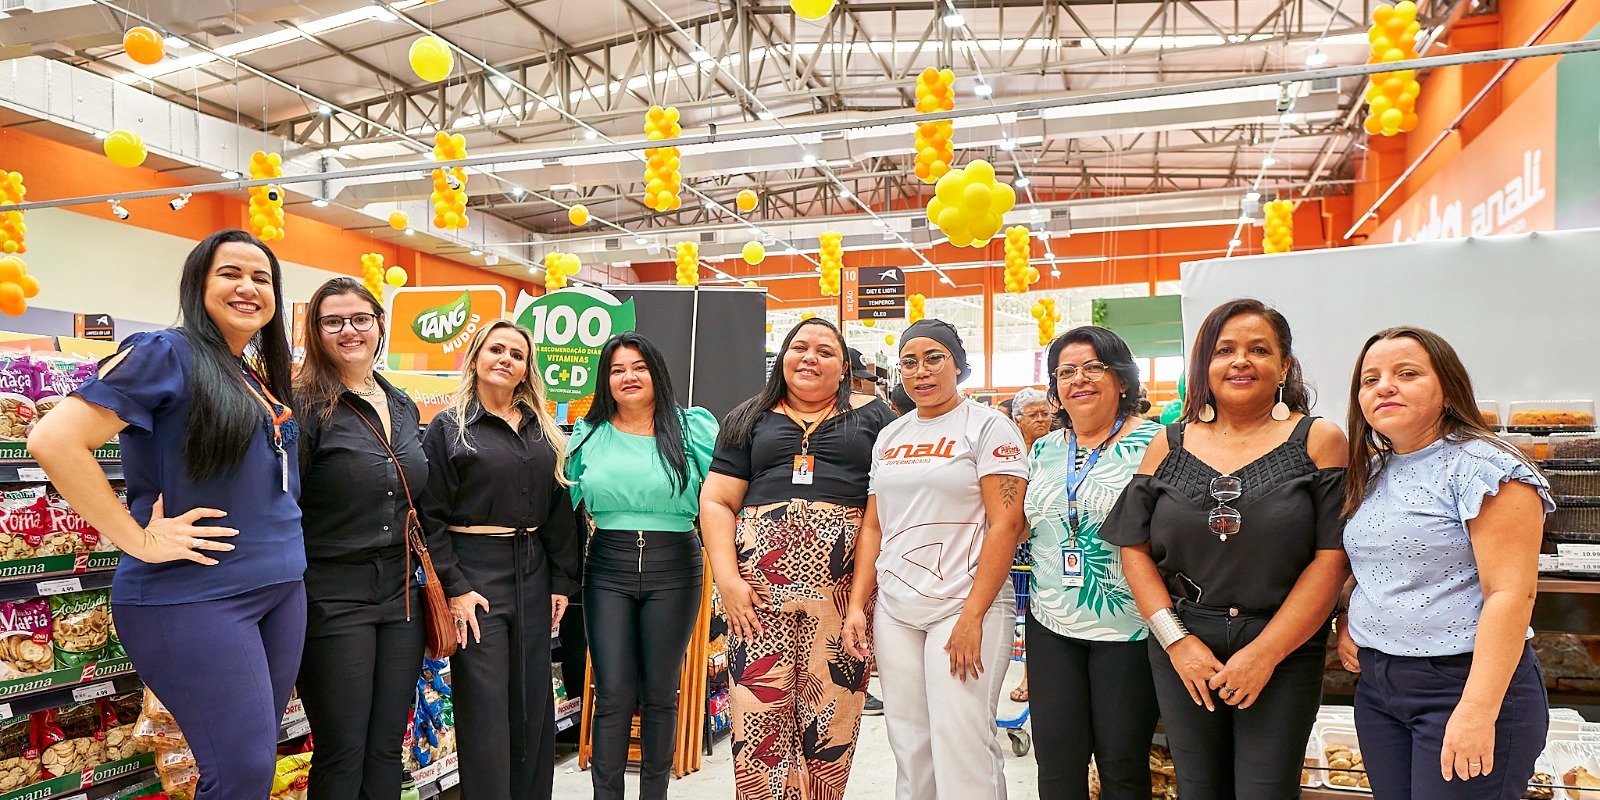 You are currently viewing Analí Supermercado inaugura unidade em Maracanaú